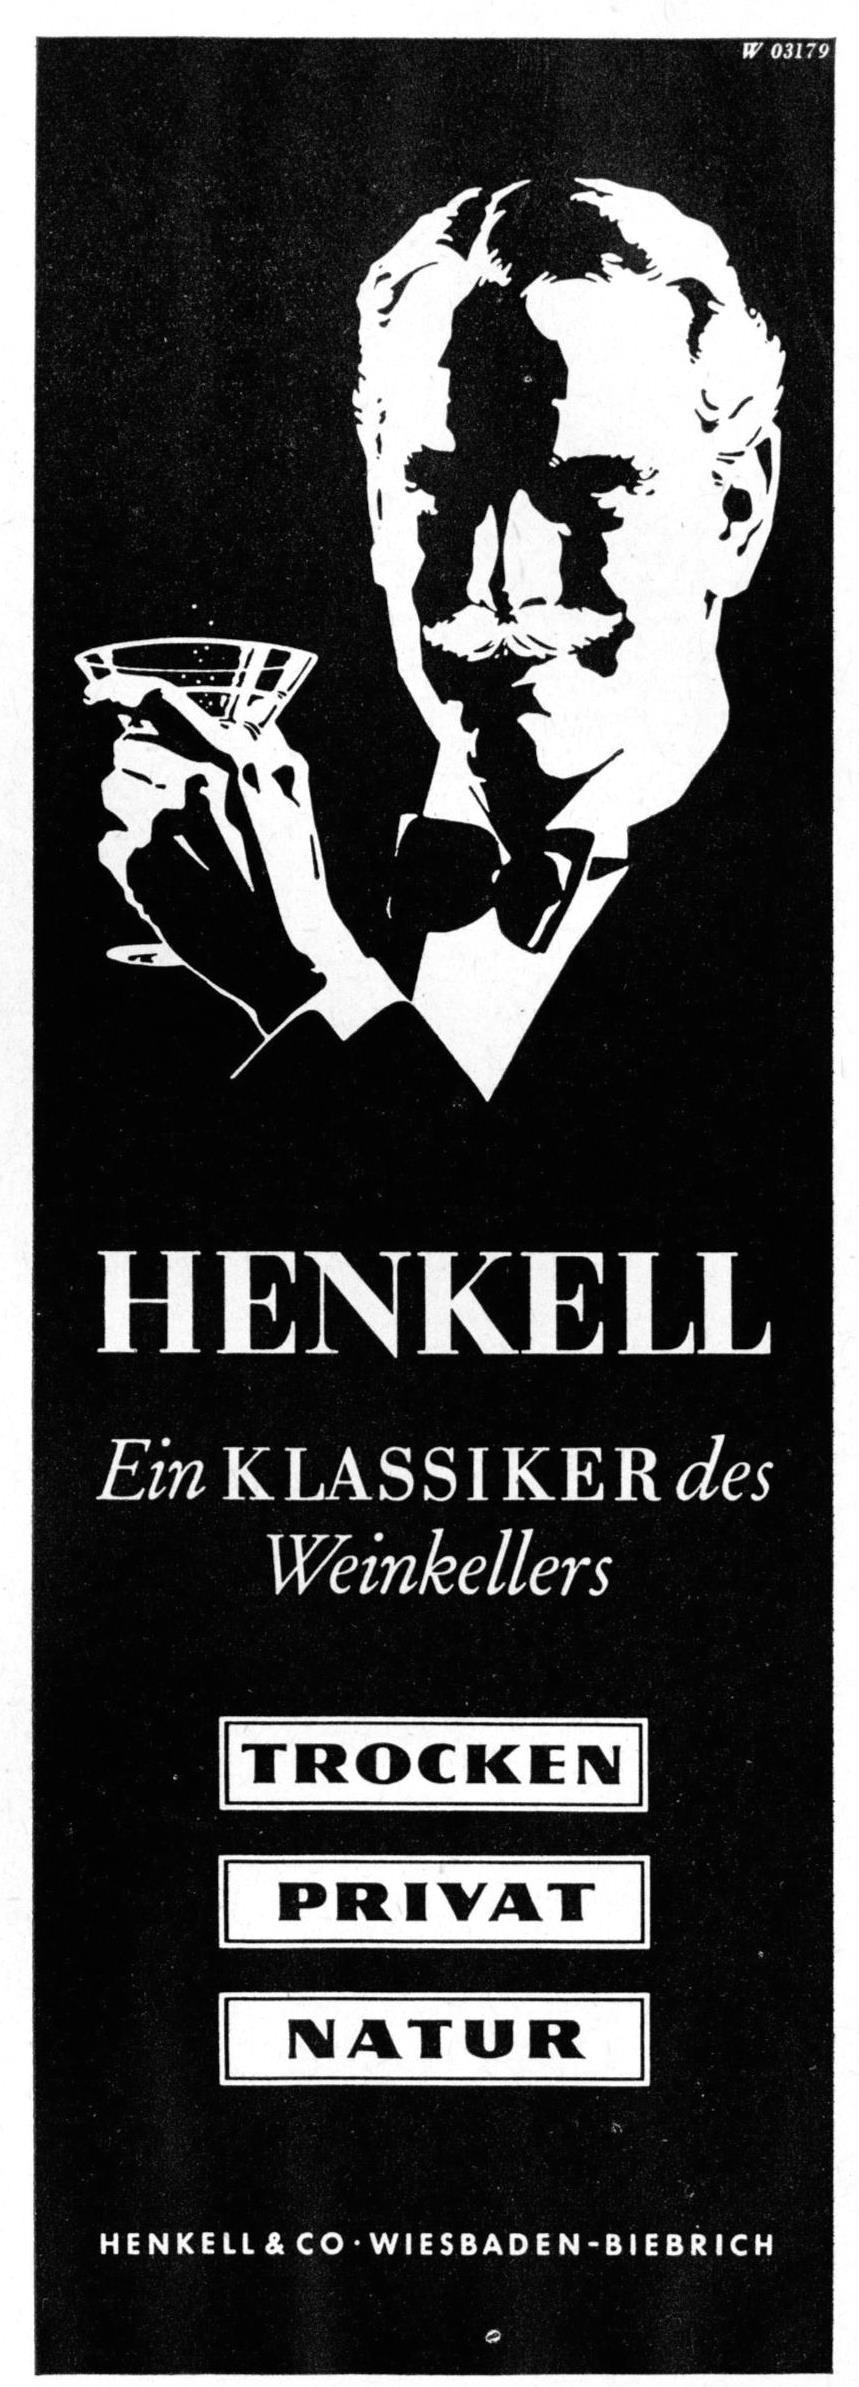 Henkell 1953 0.jpg